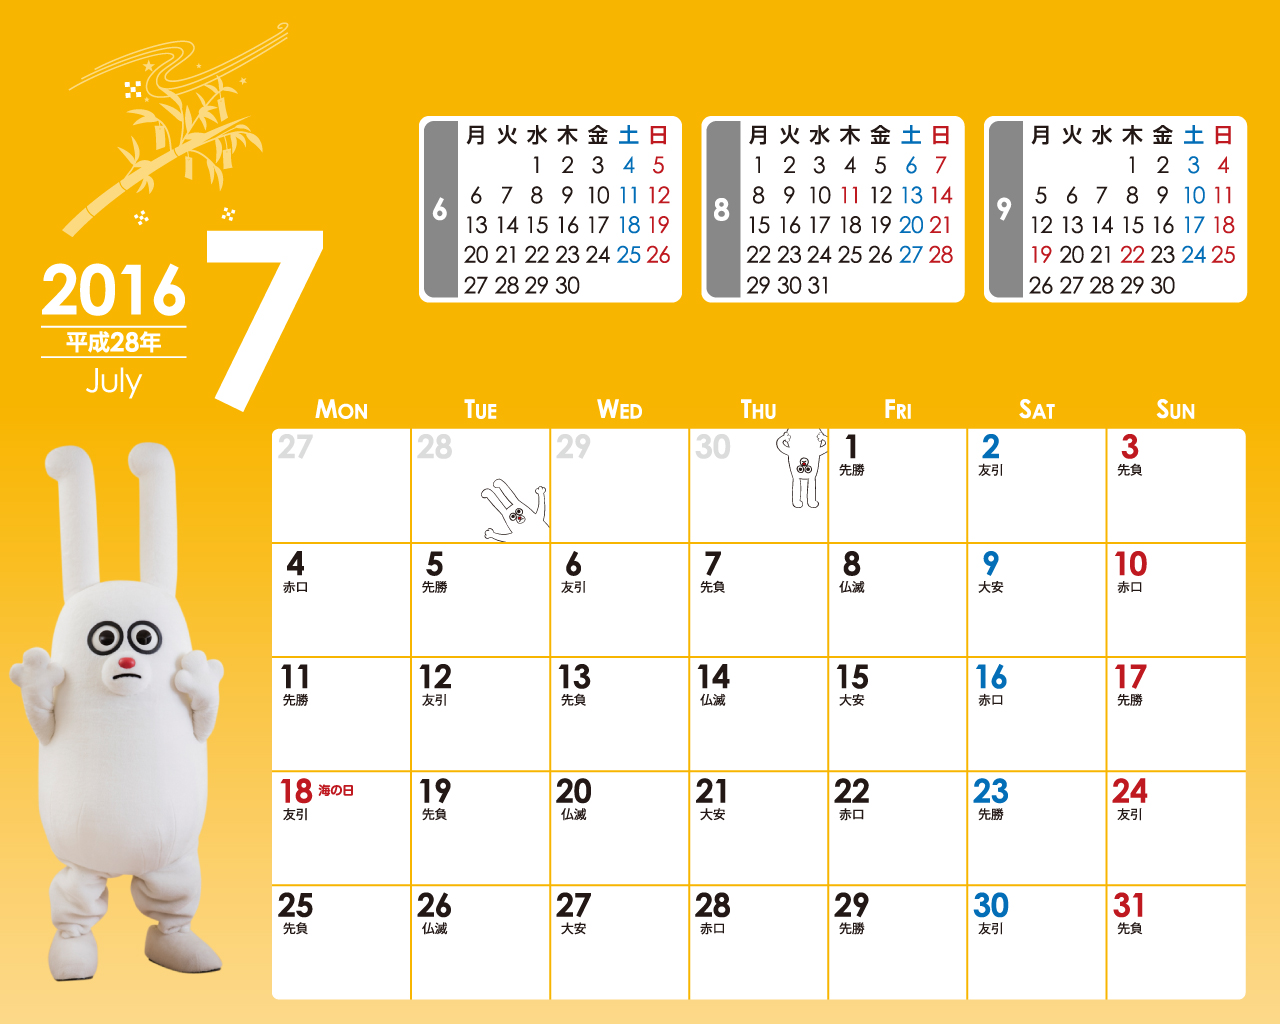 じゅういっちゃんのデジタルカレンダー16年07月 Bs11 イレブン いつでも無料放送